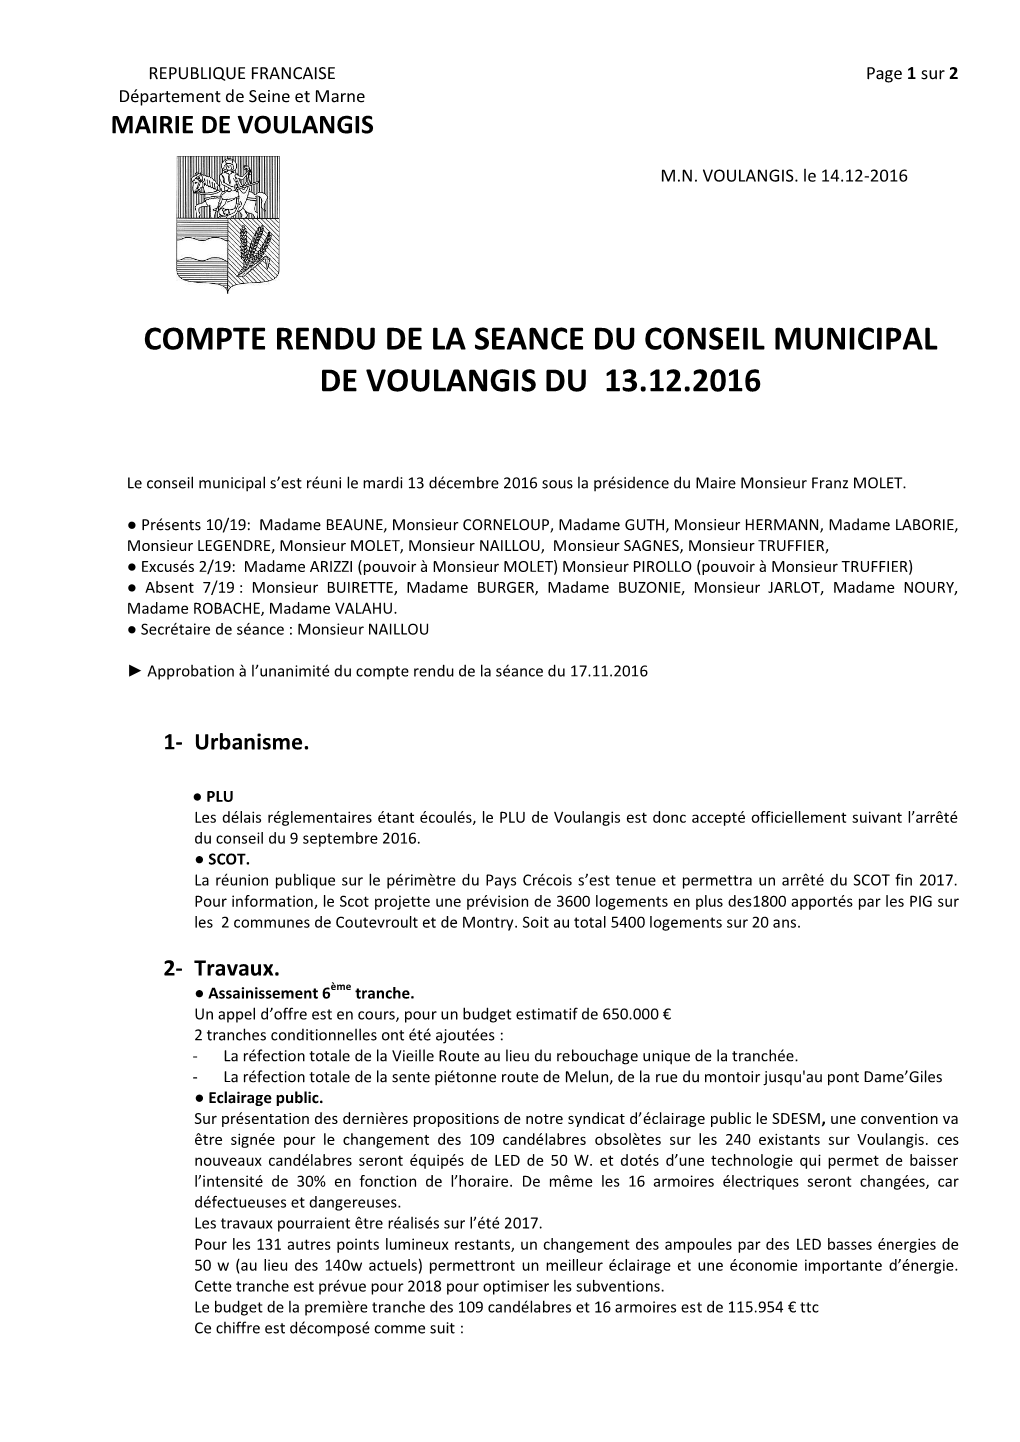 Compte Rendu De La Seance Du Conseil Municipal De Voulangis Du 13.12.2016